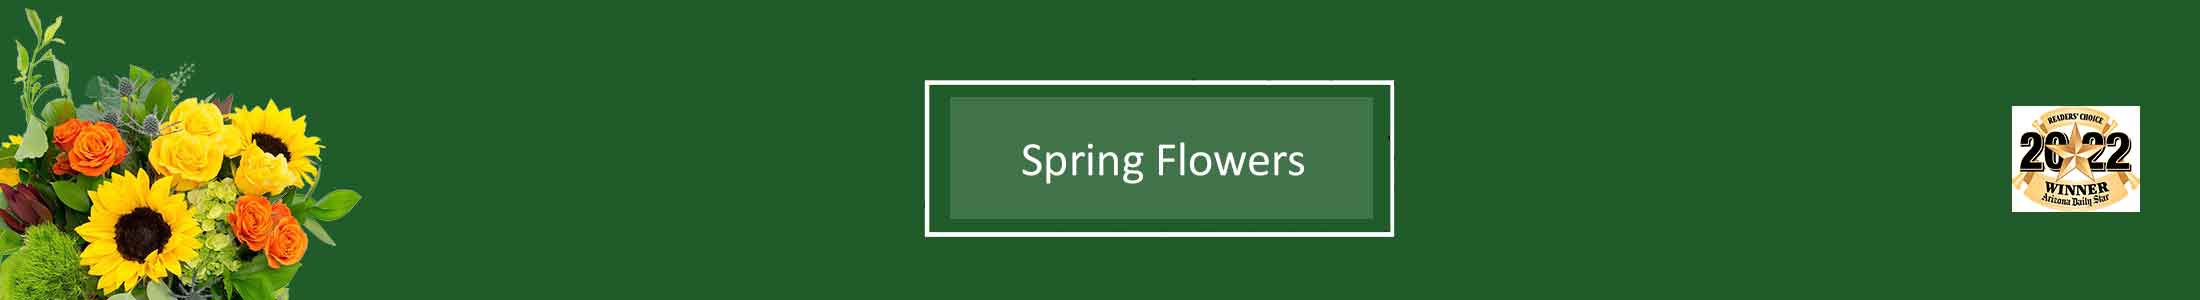 Spring Flowers, Daffodils, Dahlia